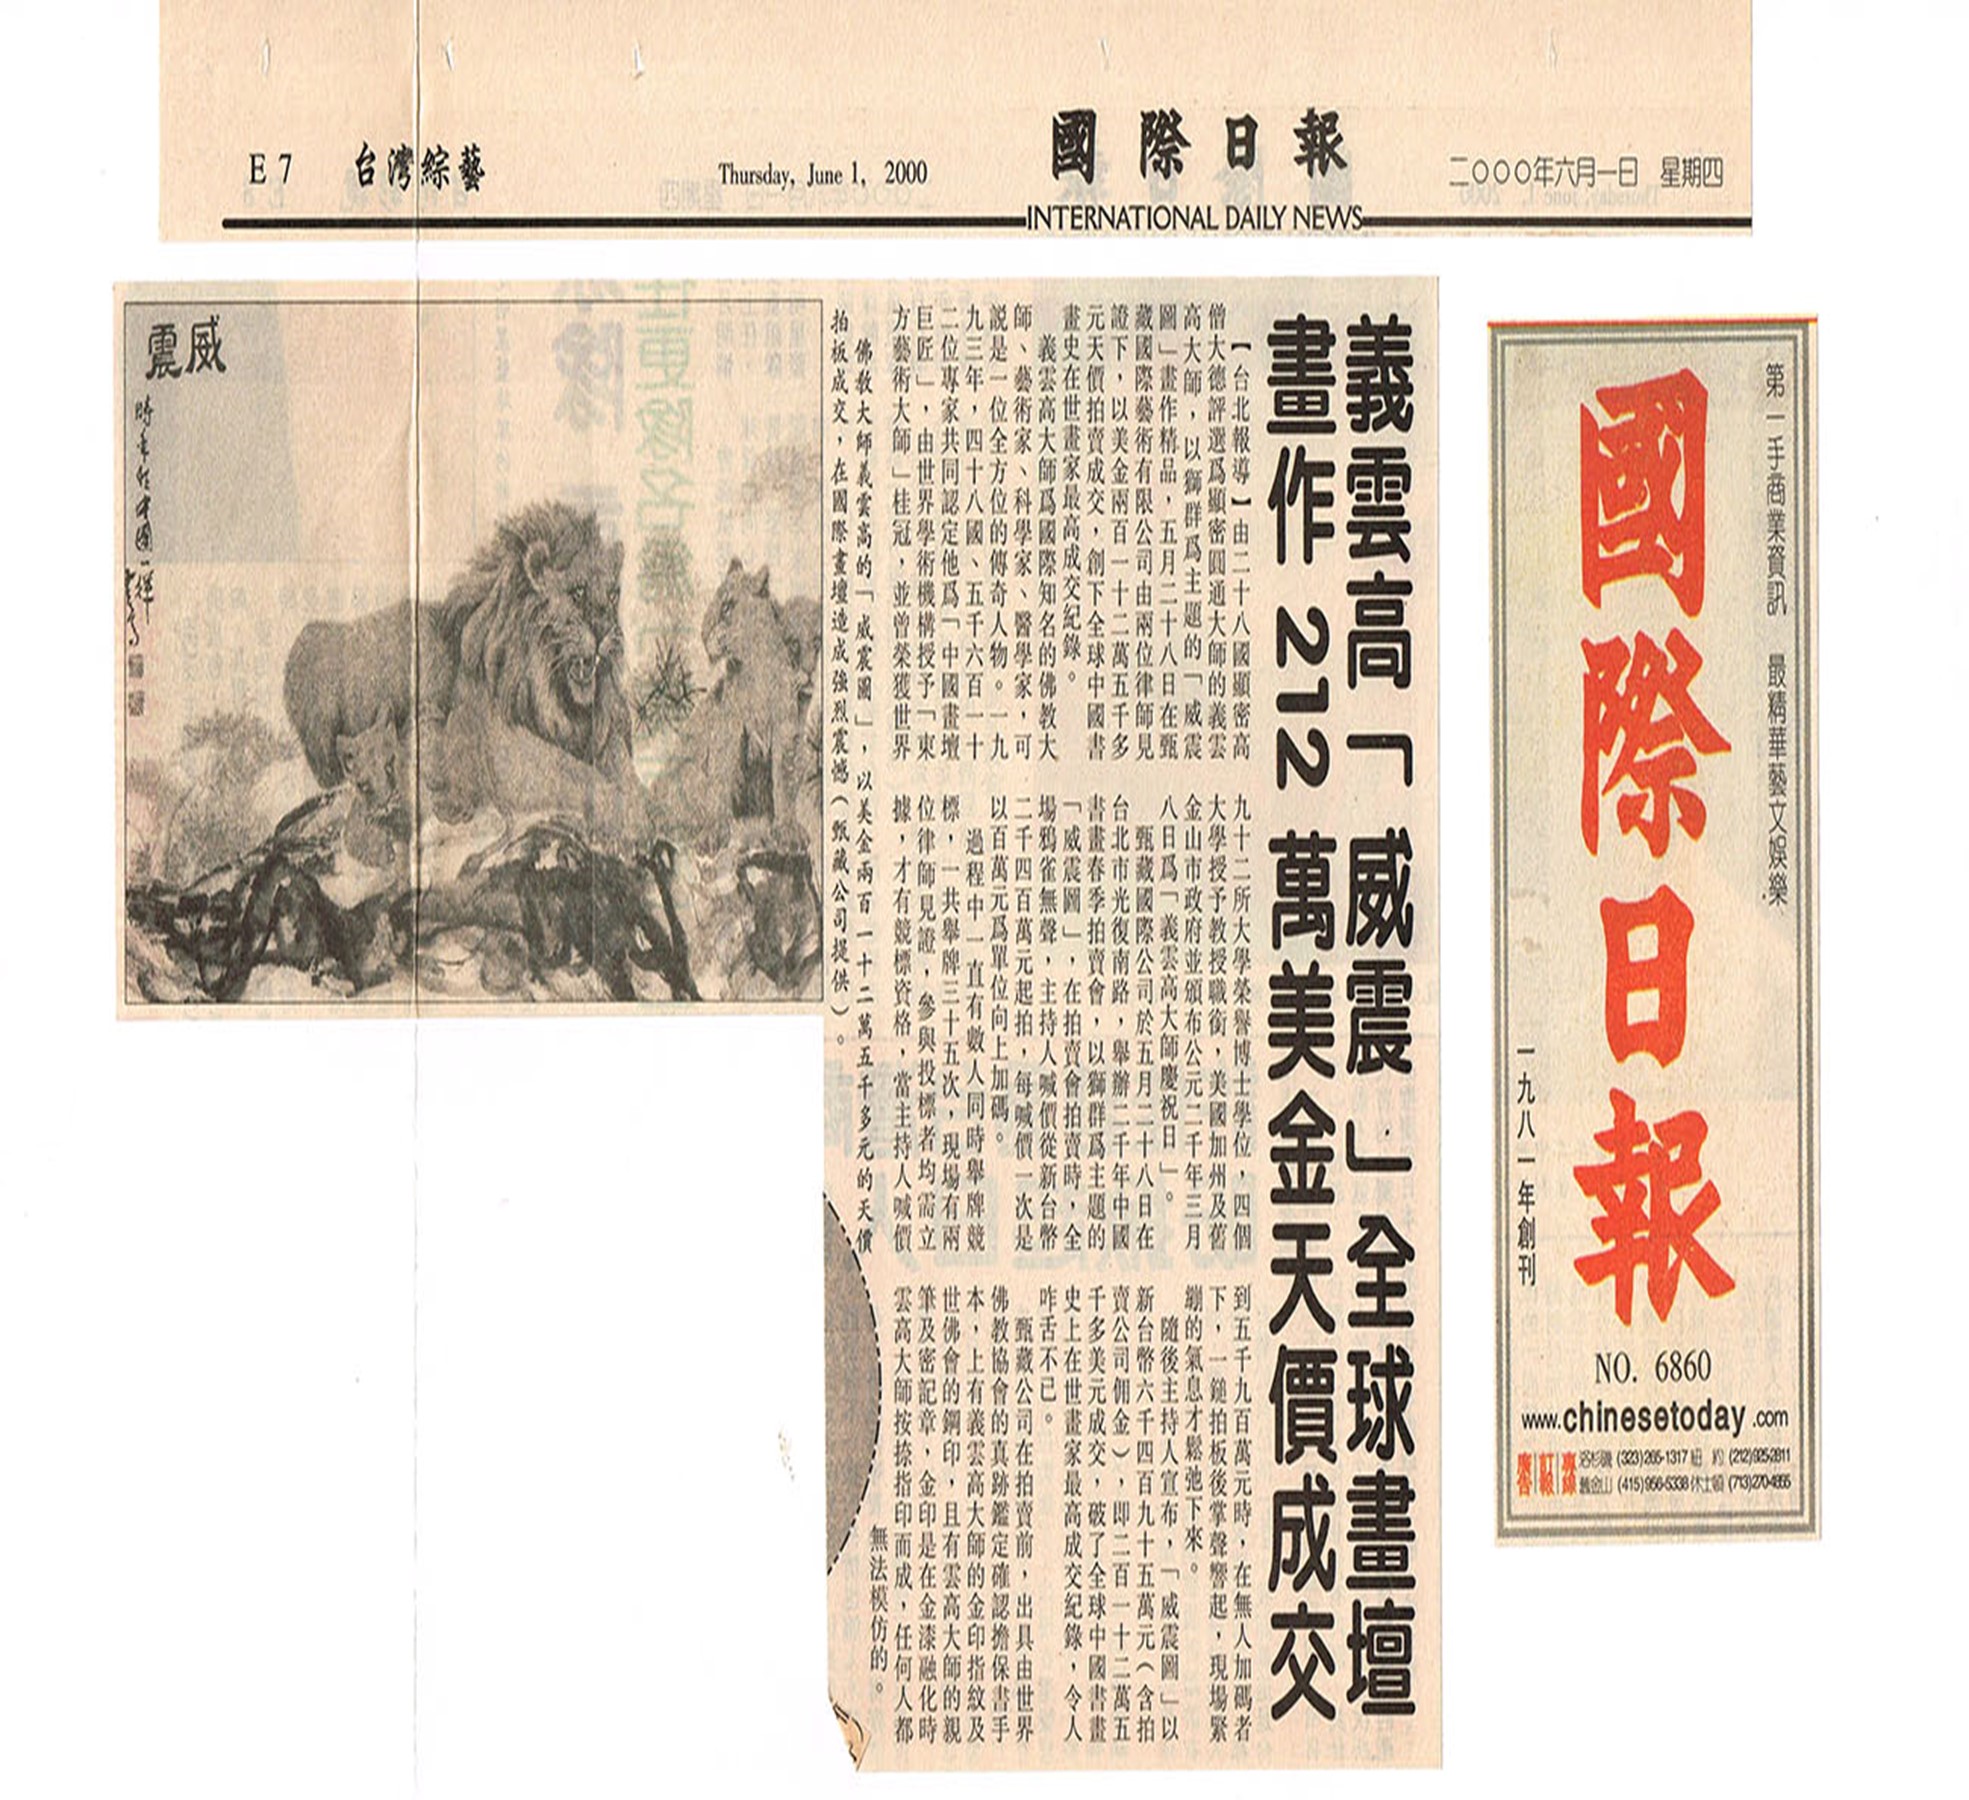 《天天日報》2004年2月12日：义云高大师获授英国皇家义艺术学院Fellow职称 200多年来第一位 证实大师对世界｜方格子 vocus